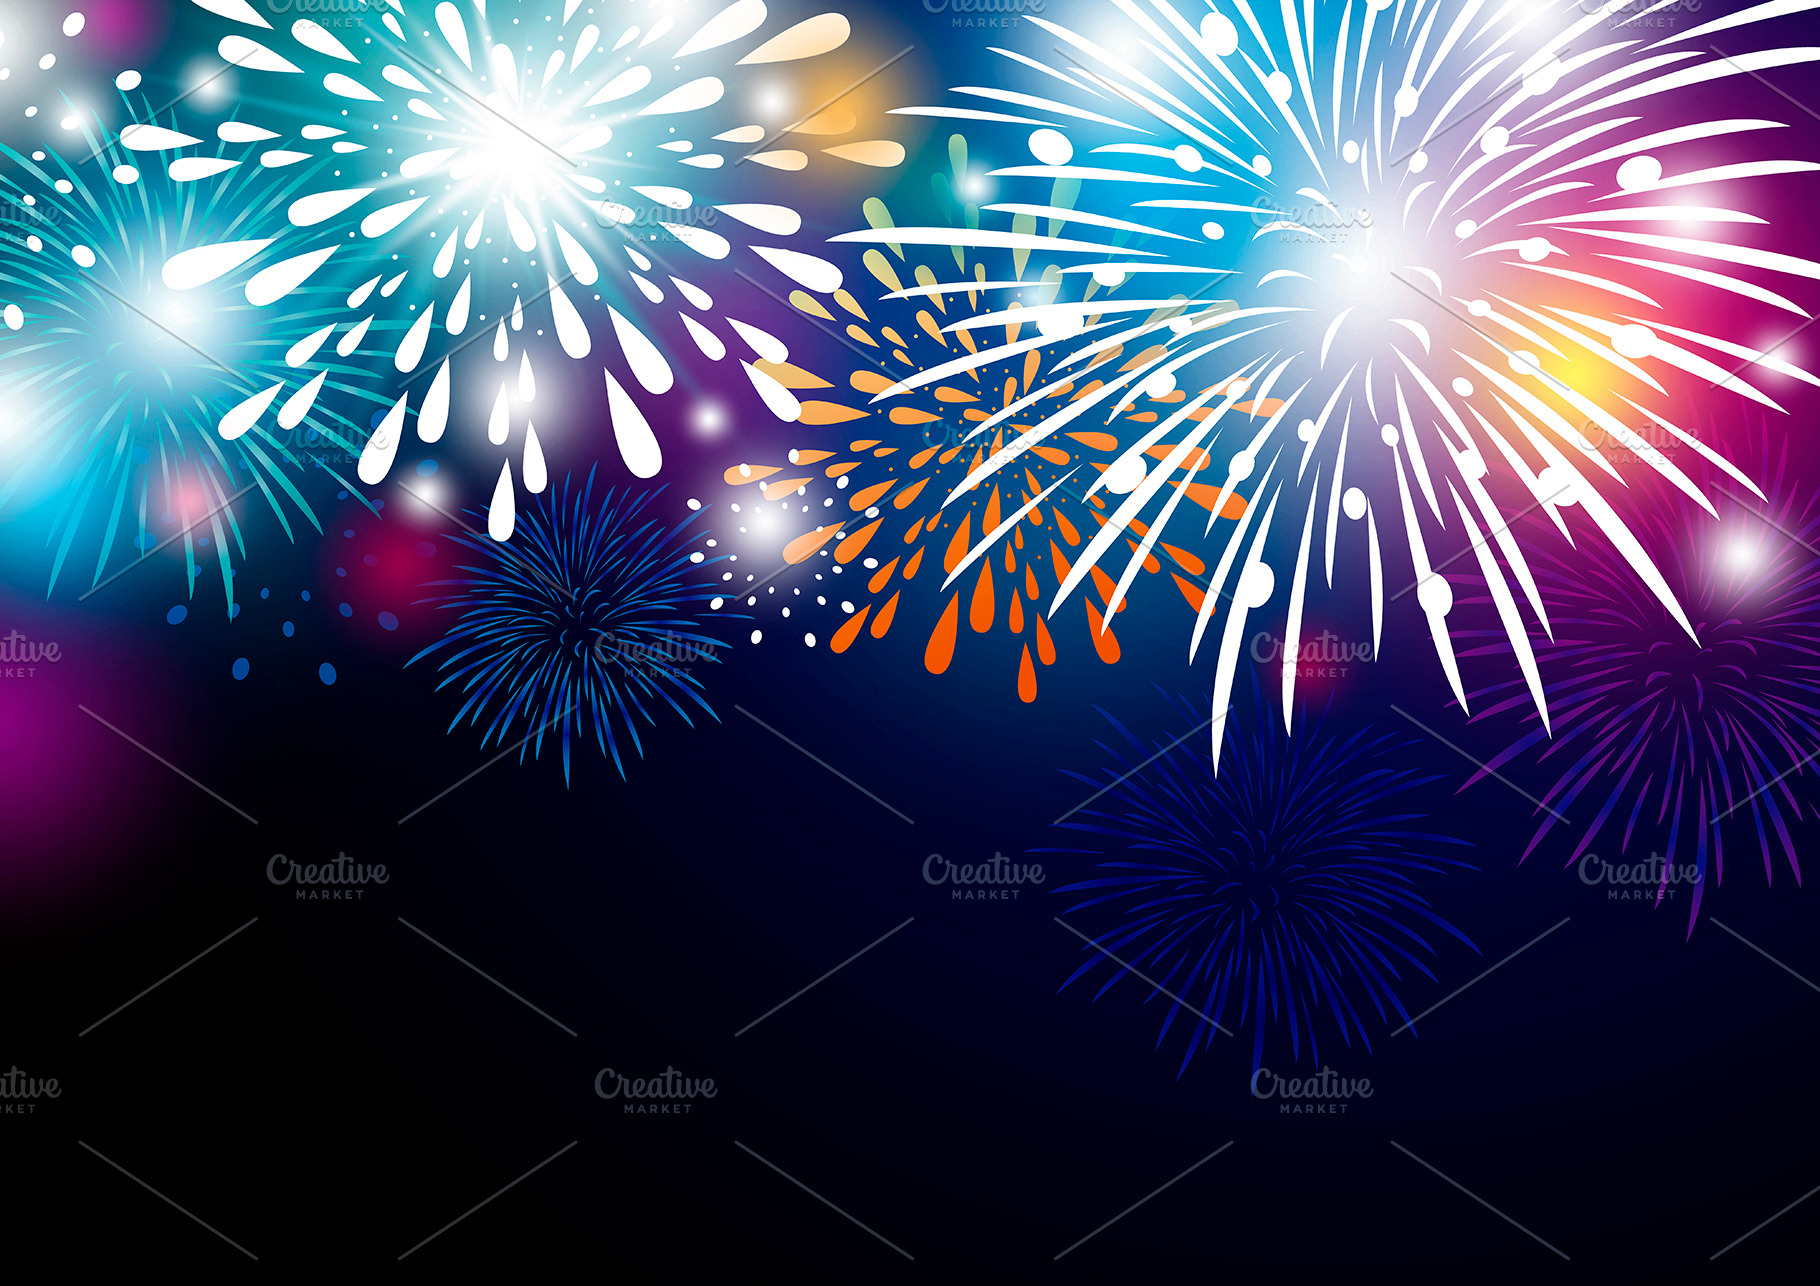 Colorful fireworks background design ~ Illustrations ...